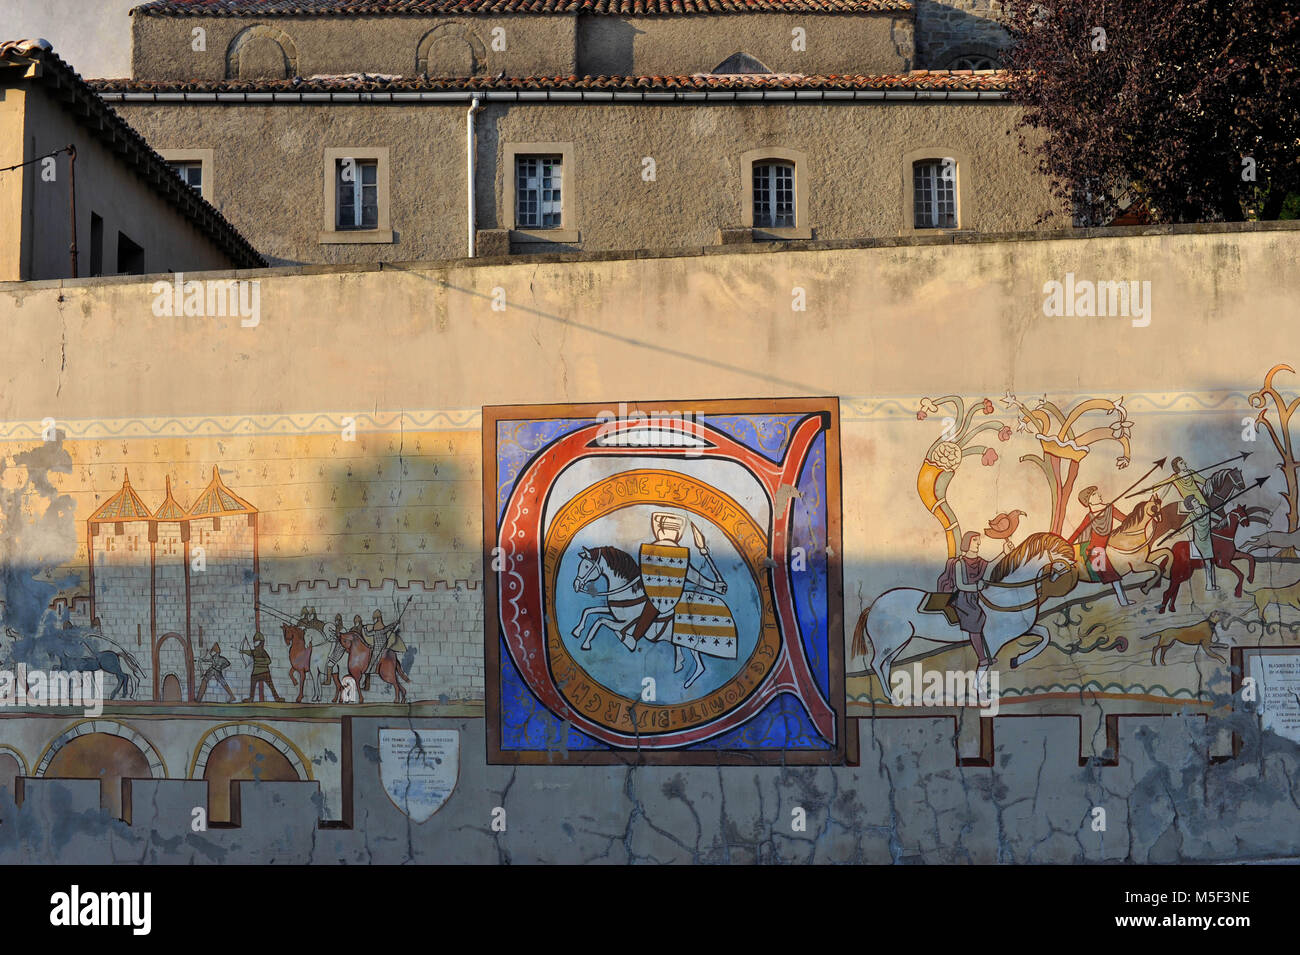 Carcassonne, Francia. Disegni sulla parete della città raccontano la storia catari, cittadella medioevale. Foto Stock